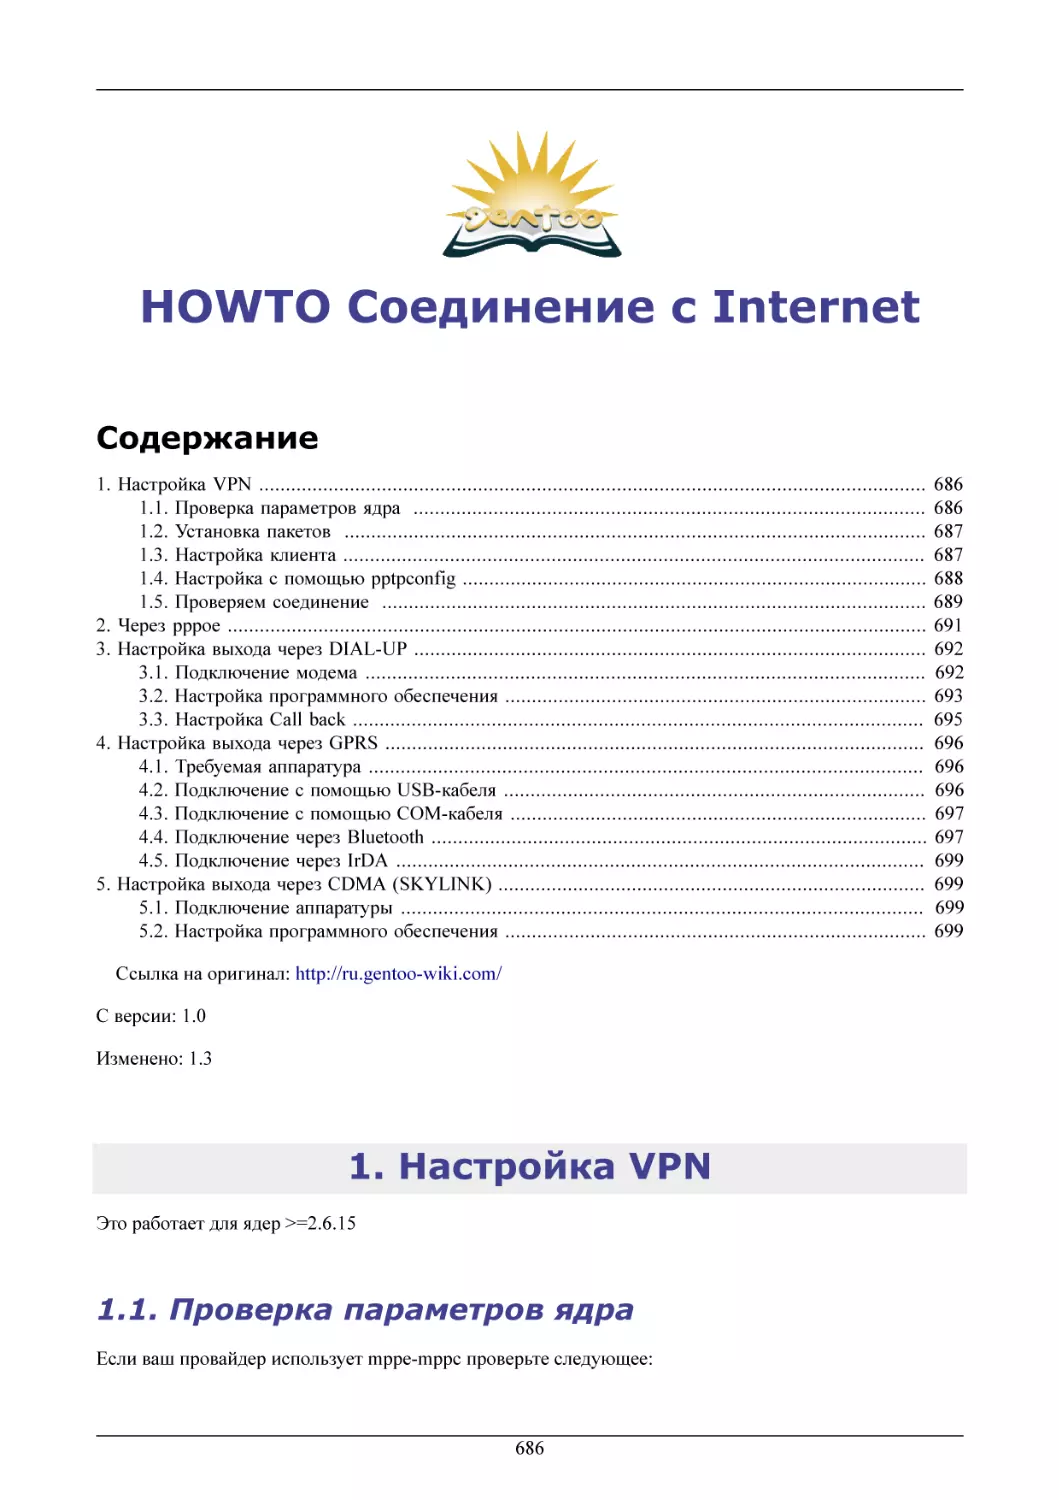 HOWTO Соединение с Internet
Настройка VPN
Проверка параметров ядра